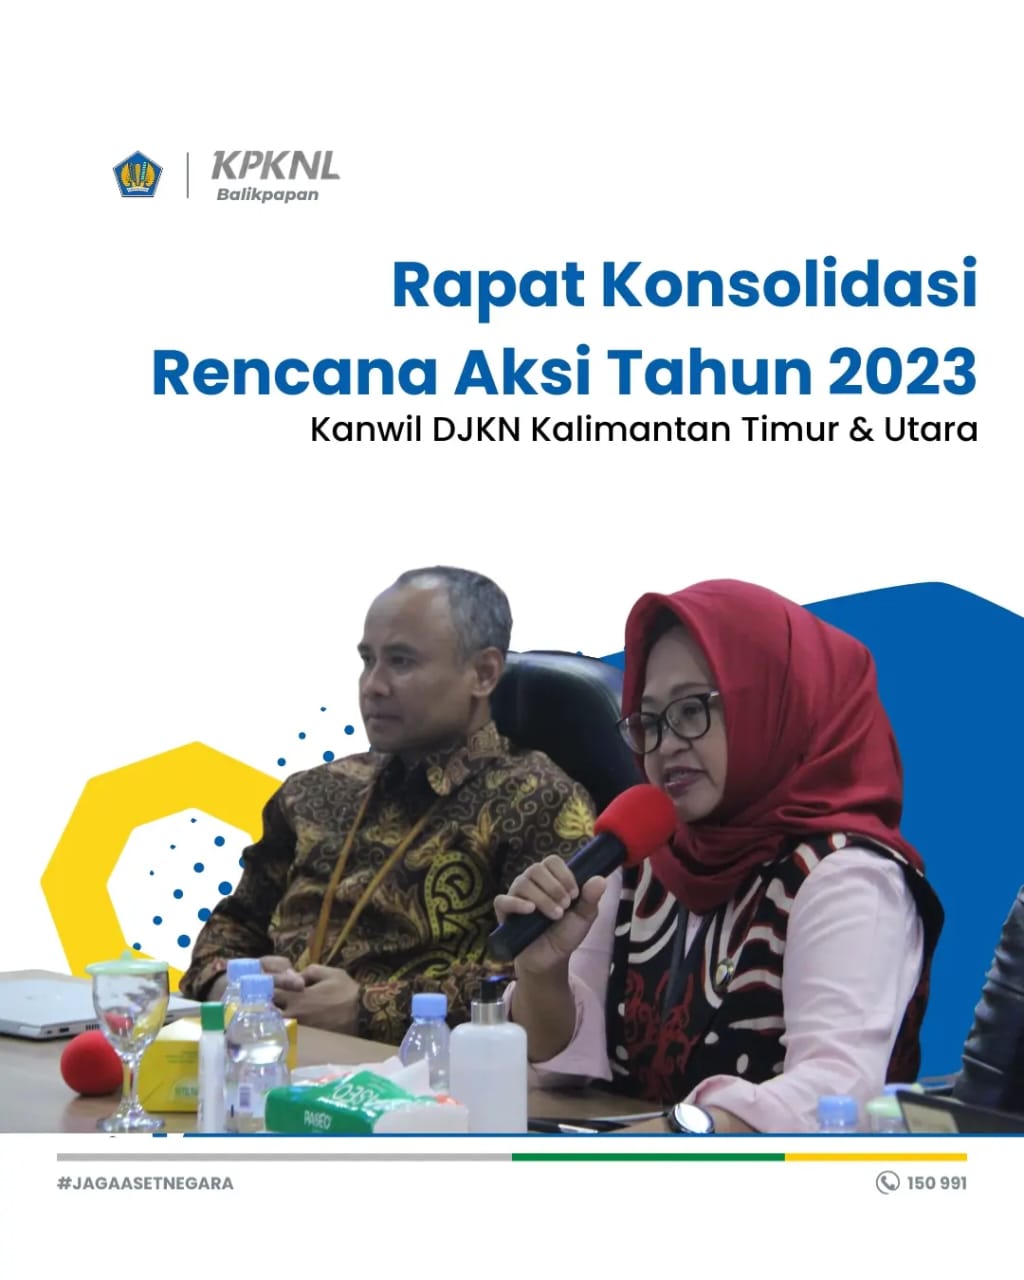 Rapat Konsolidasi Rencana Aksi Tahun 2023 DJKN Kalimantan Timur dan Utara